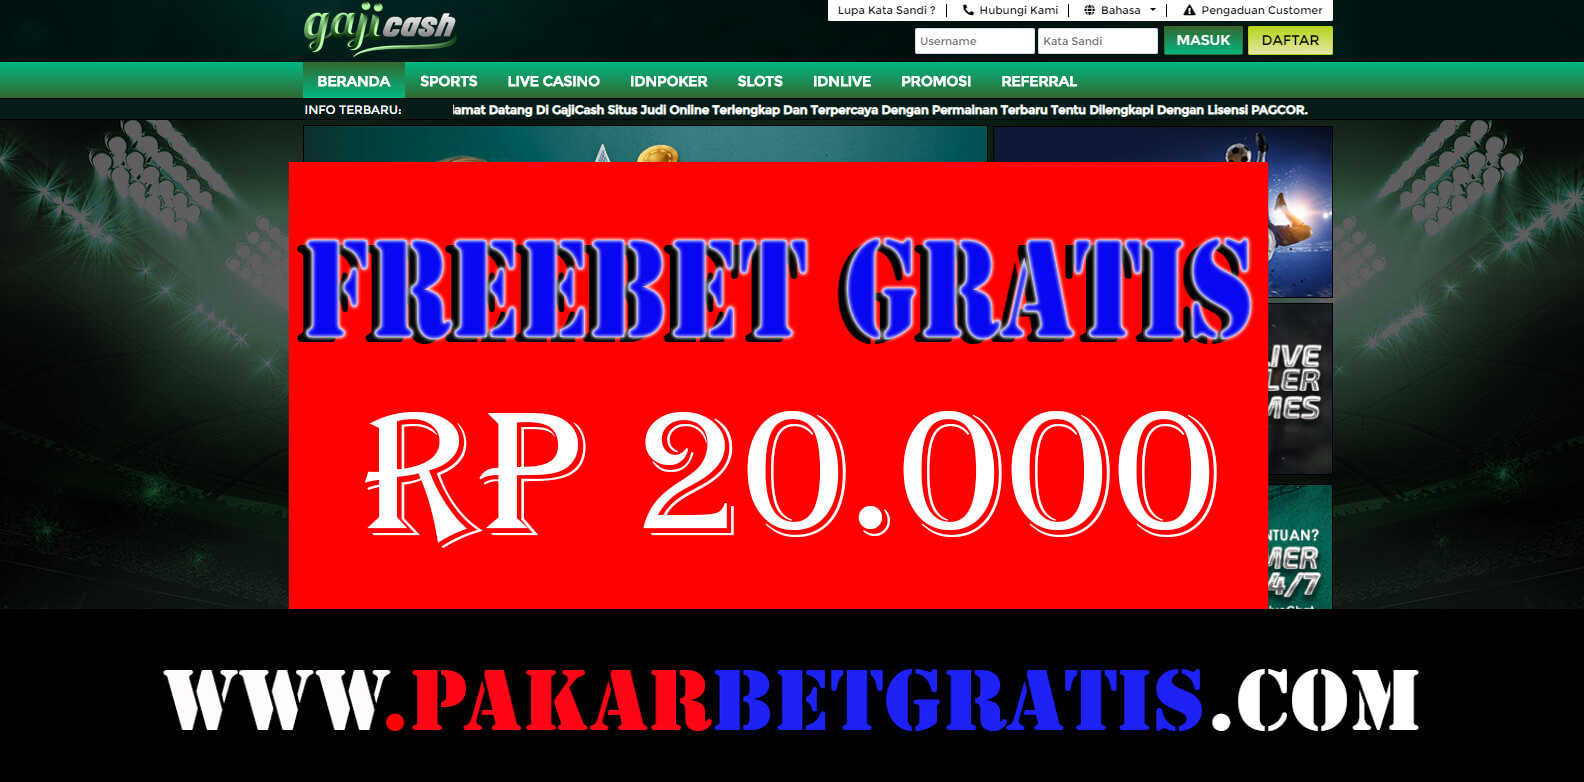 Freebet gratis Gajicash Rp 20.000 Tanpa Deposit